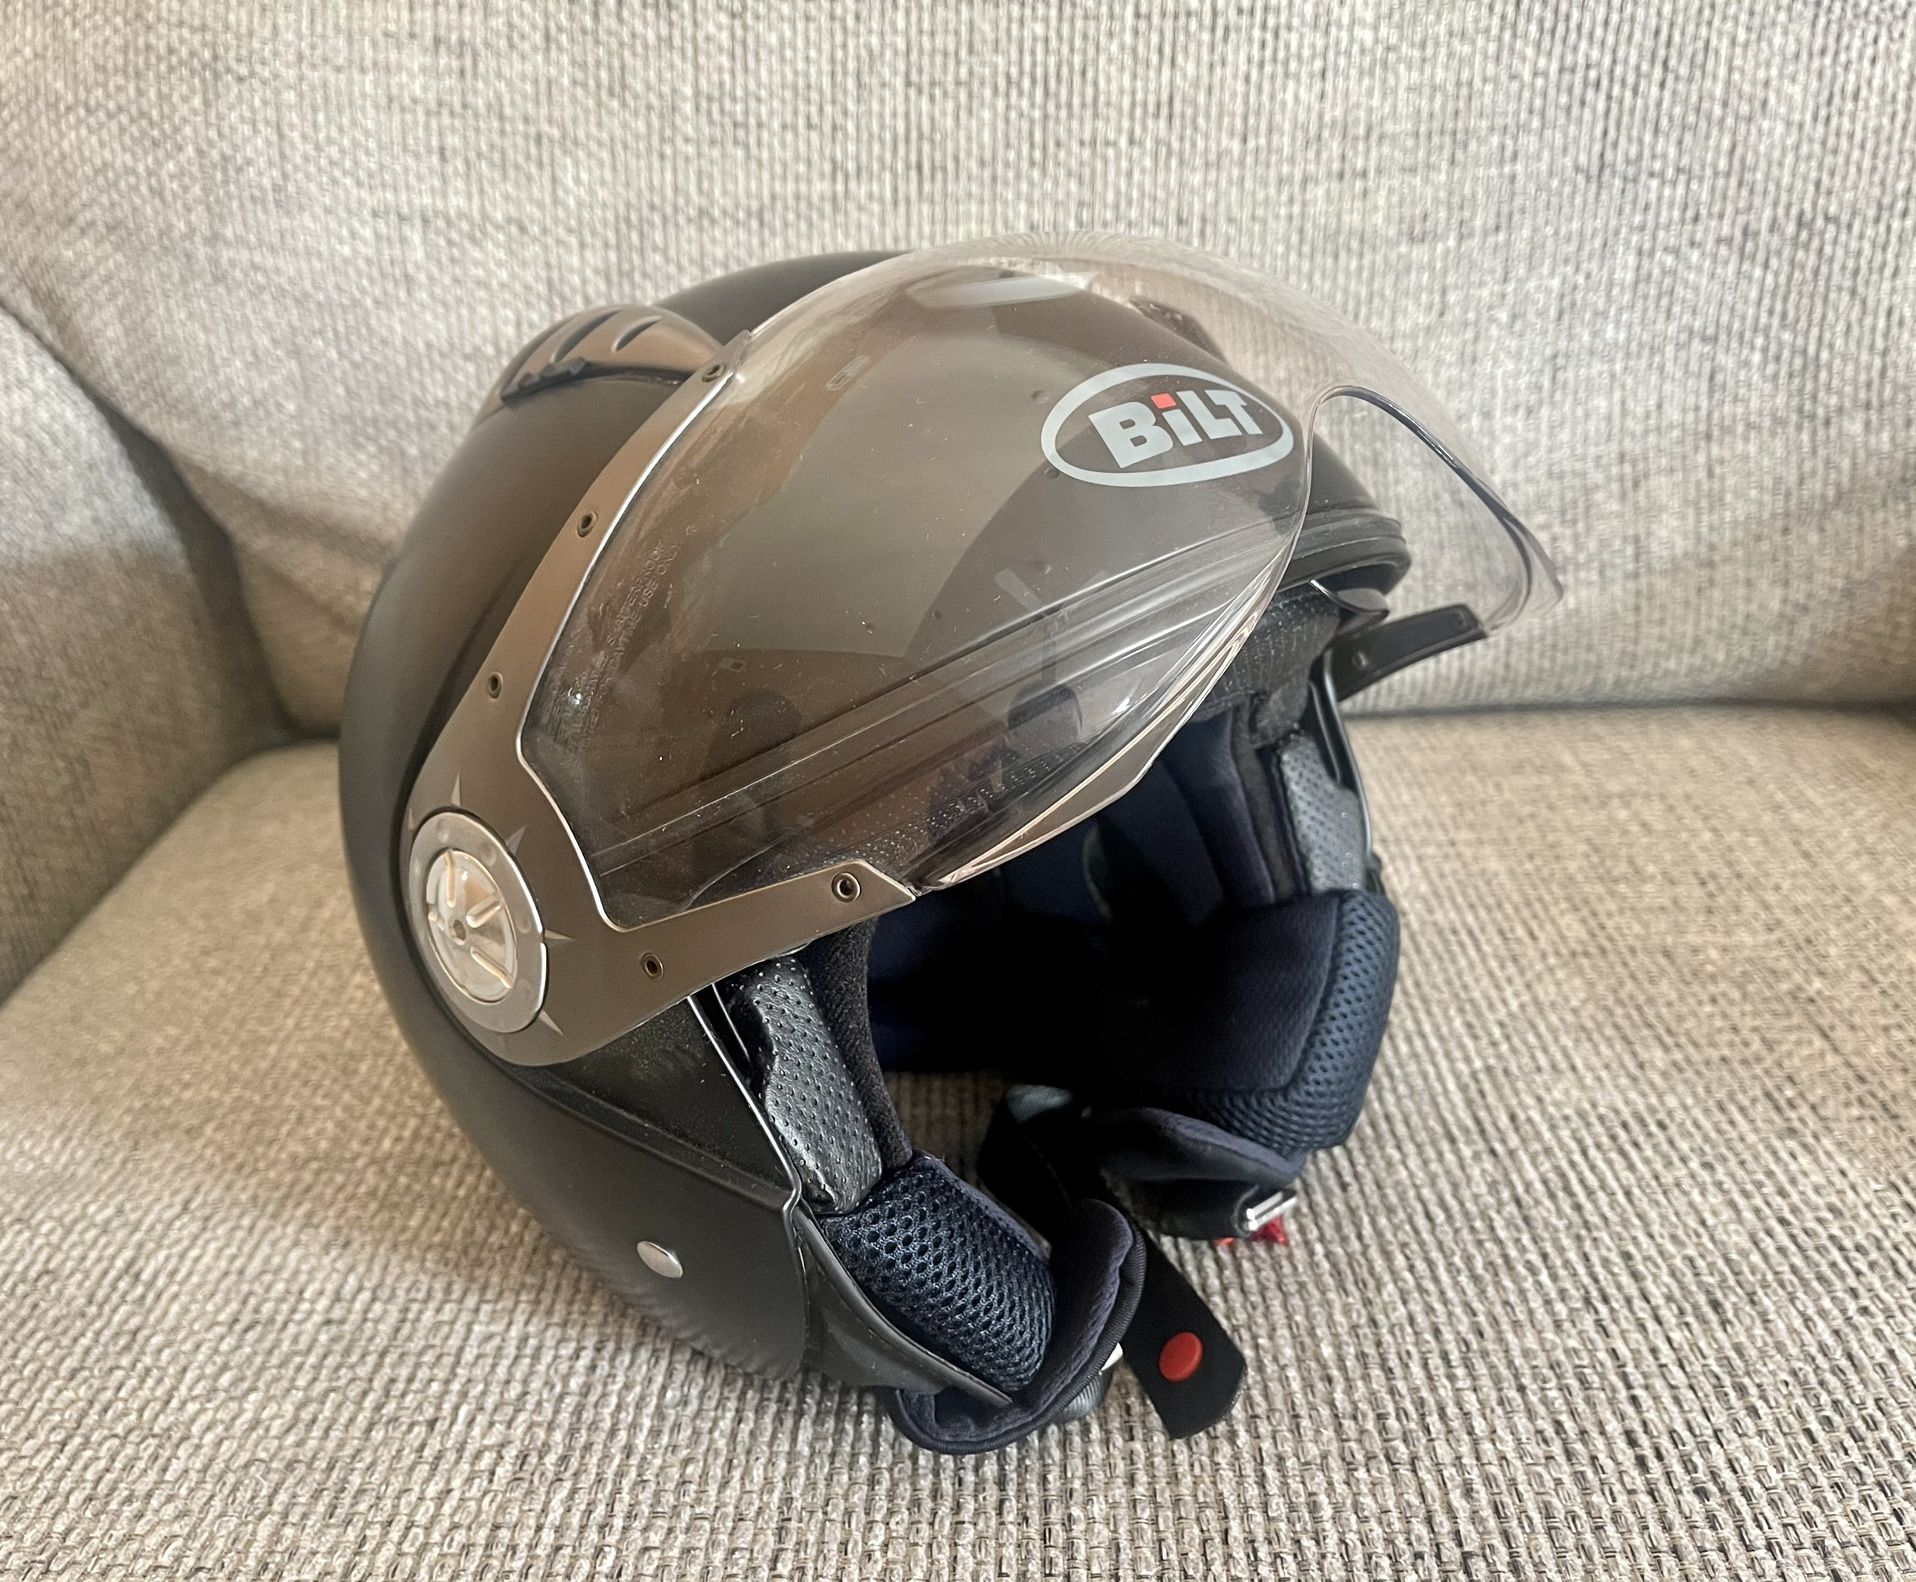 BILT Pilot Open-Face Motorcycle Helmet - M, Gloss Black BILT Pilot